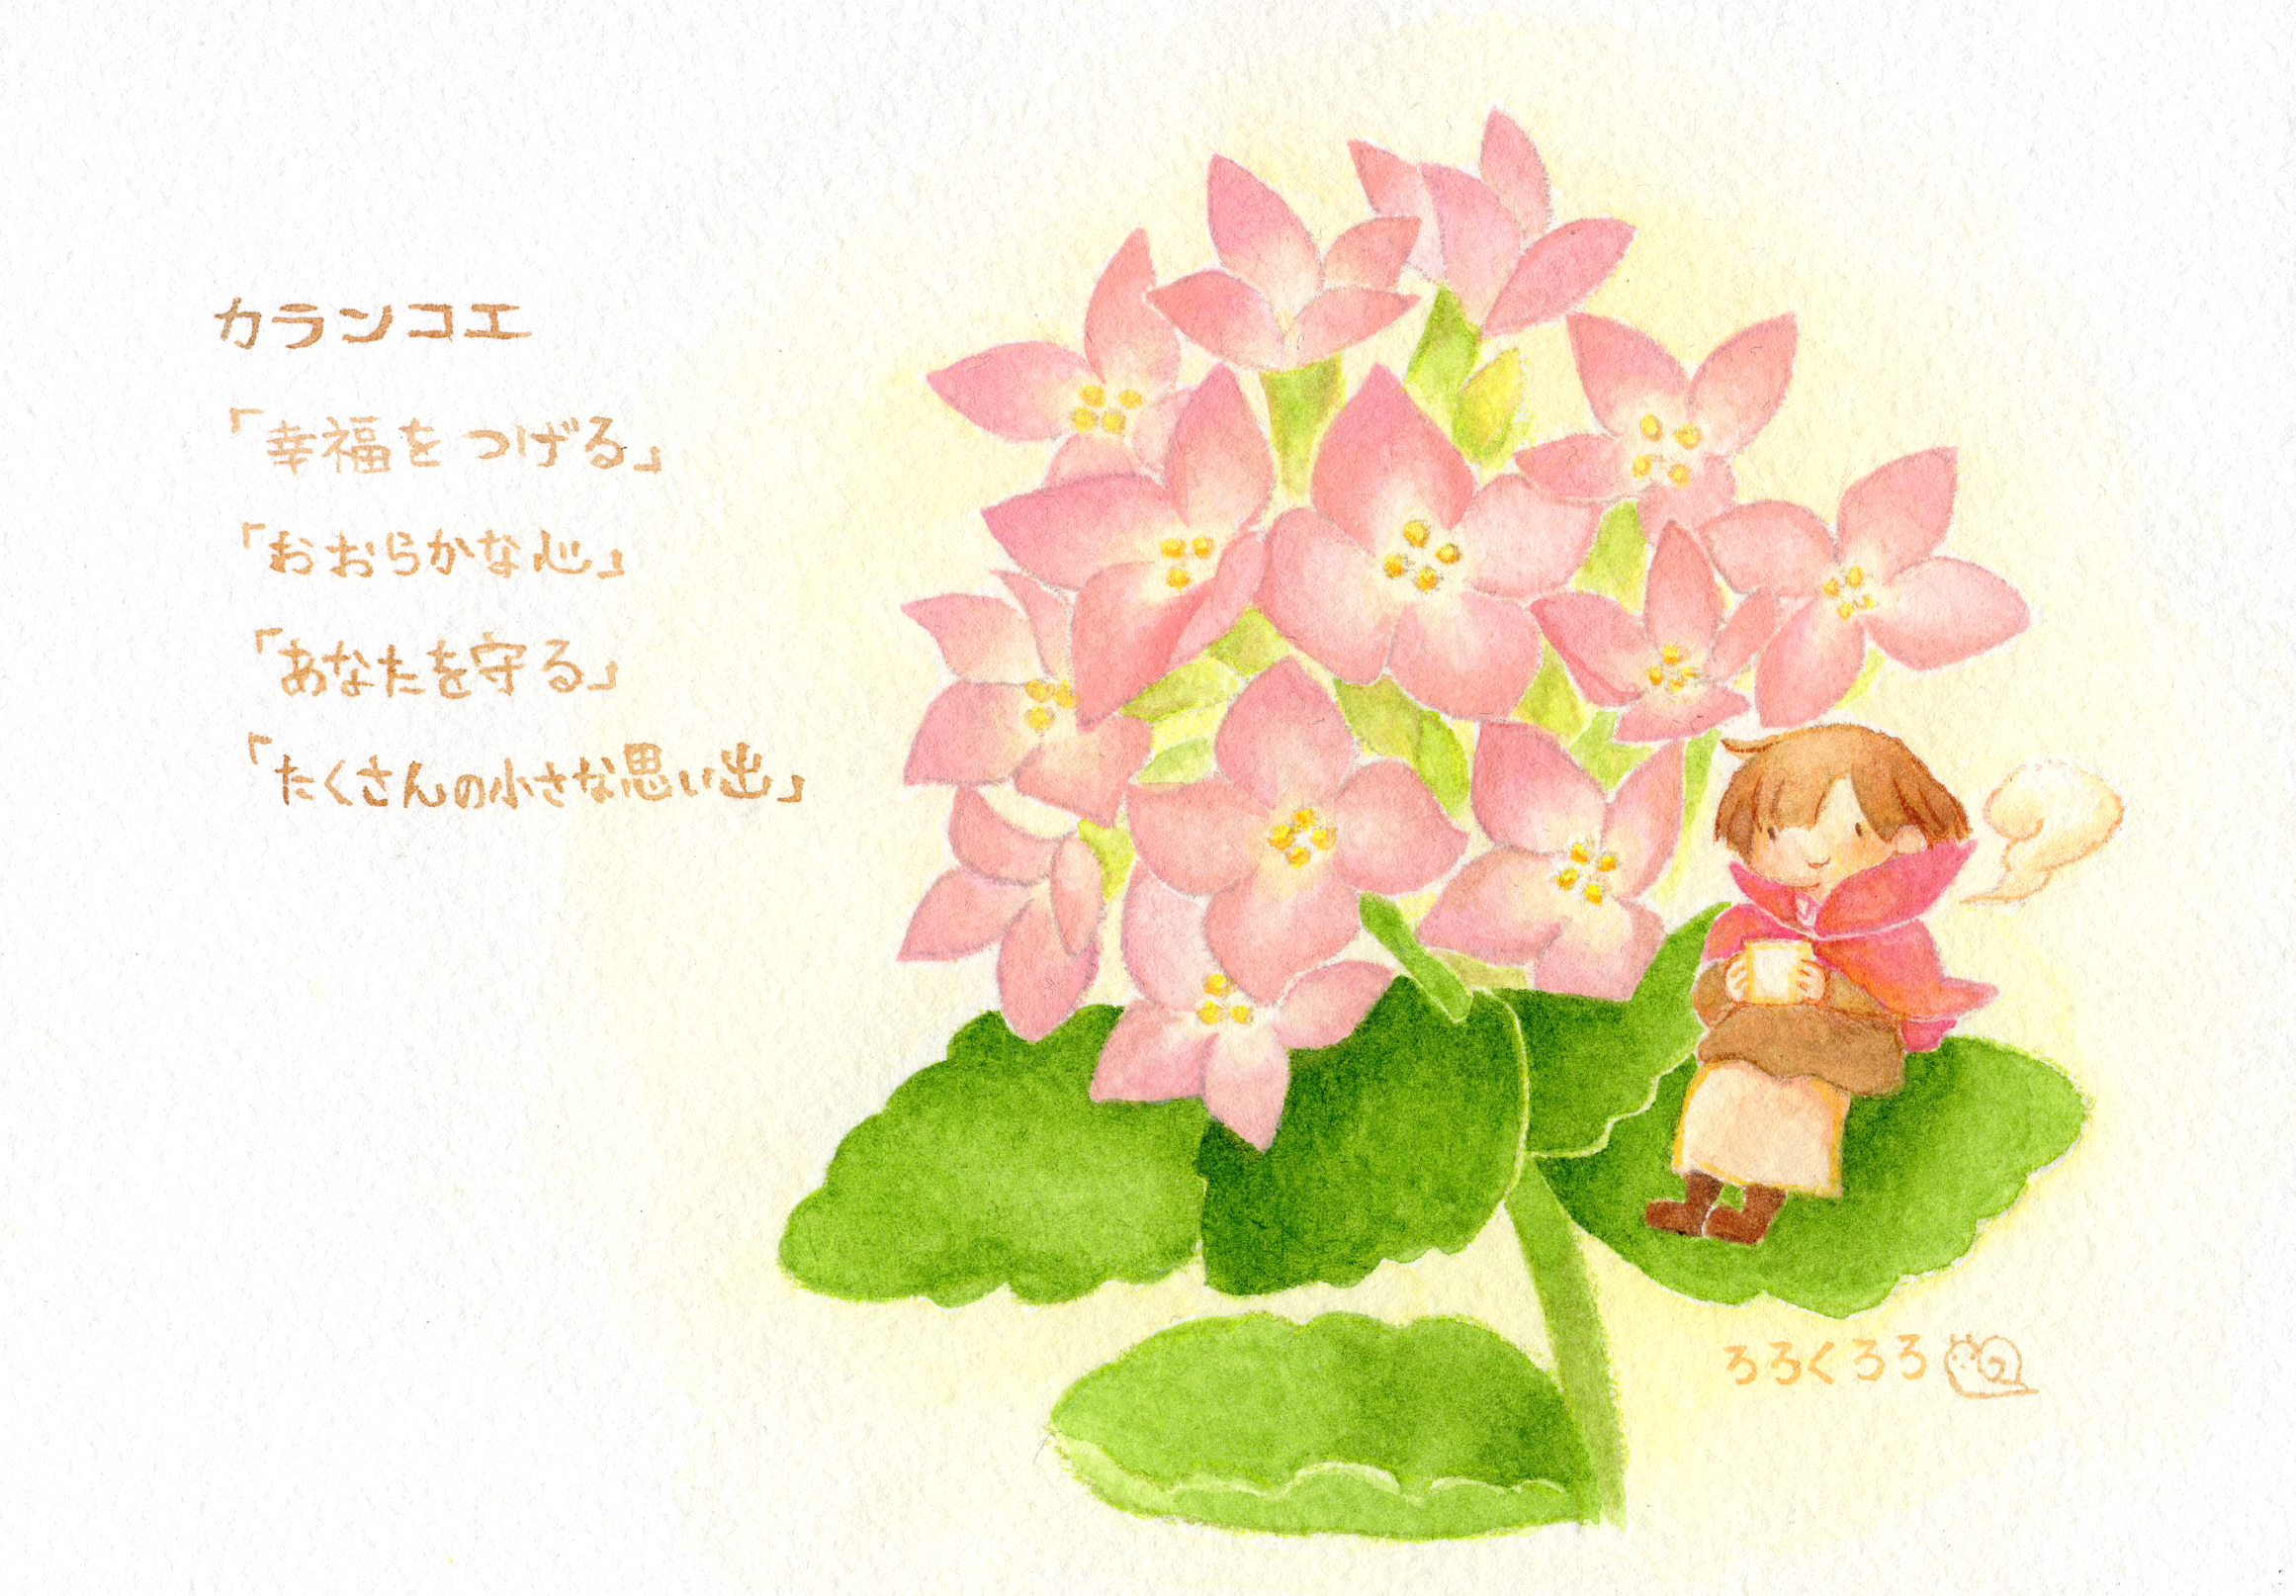 ろろくろろ 北九州 先日プレゼントのために描いたイラストです カランコエ 花言葉 幸運を告げる おおらかな心 あなたを守る たくさんの小さな幸せ T Co Deqzz79zvq Twitter